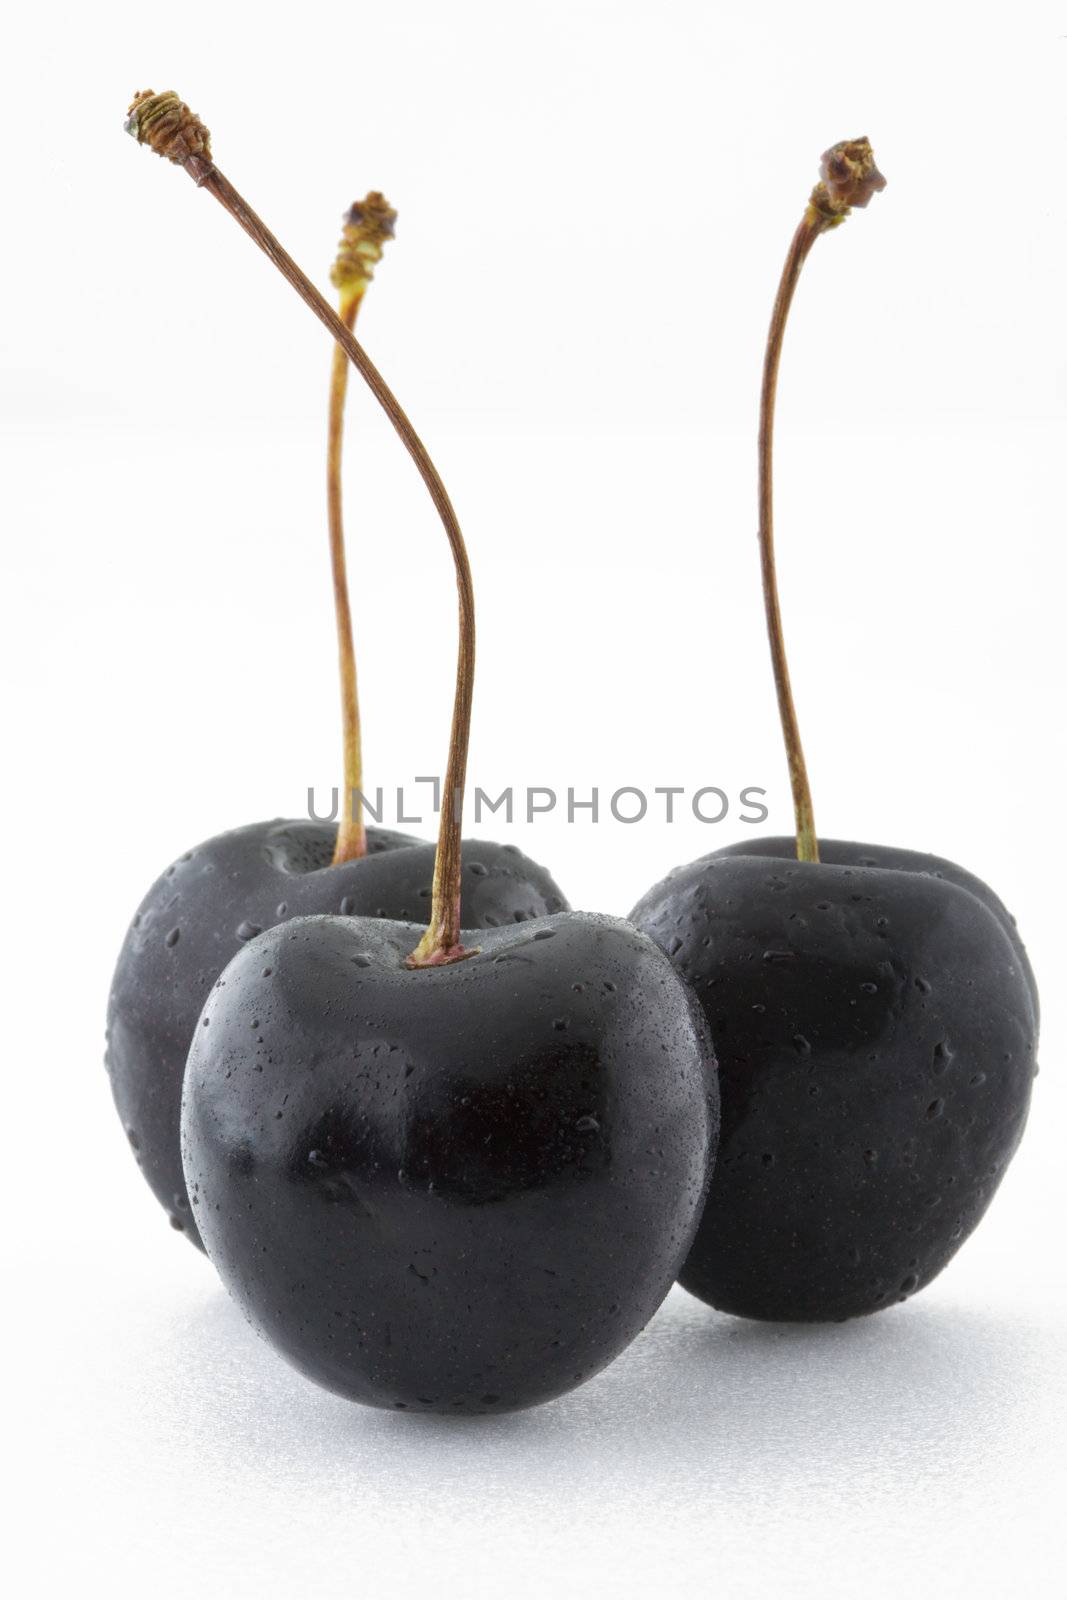 Black Cherries by antpkr